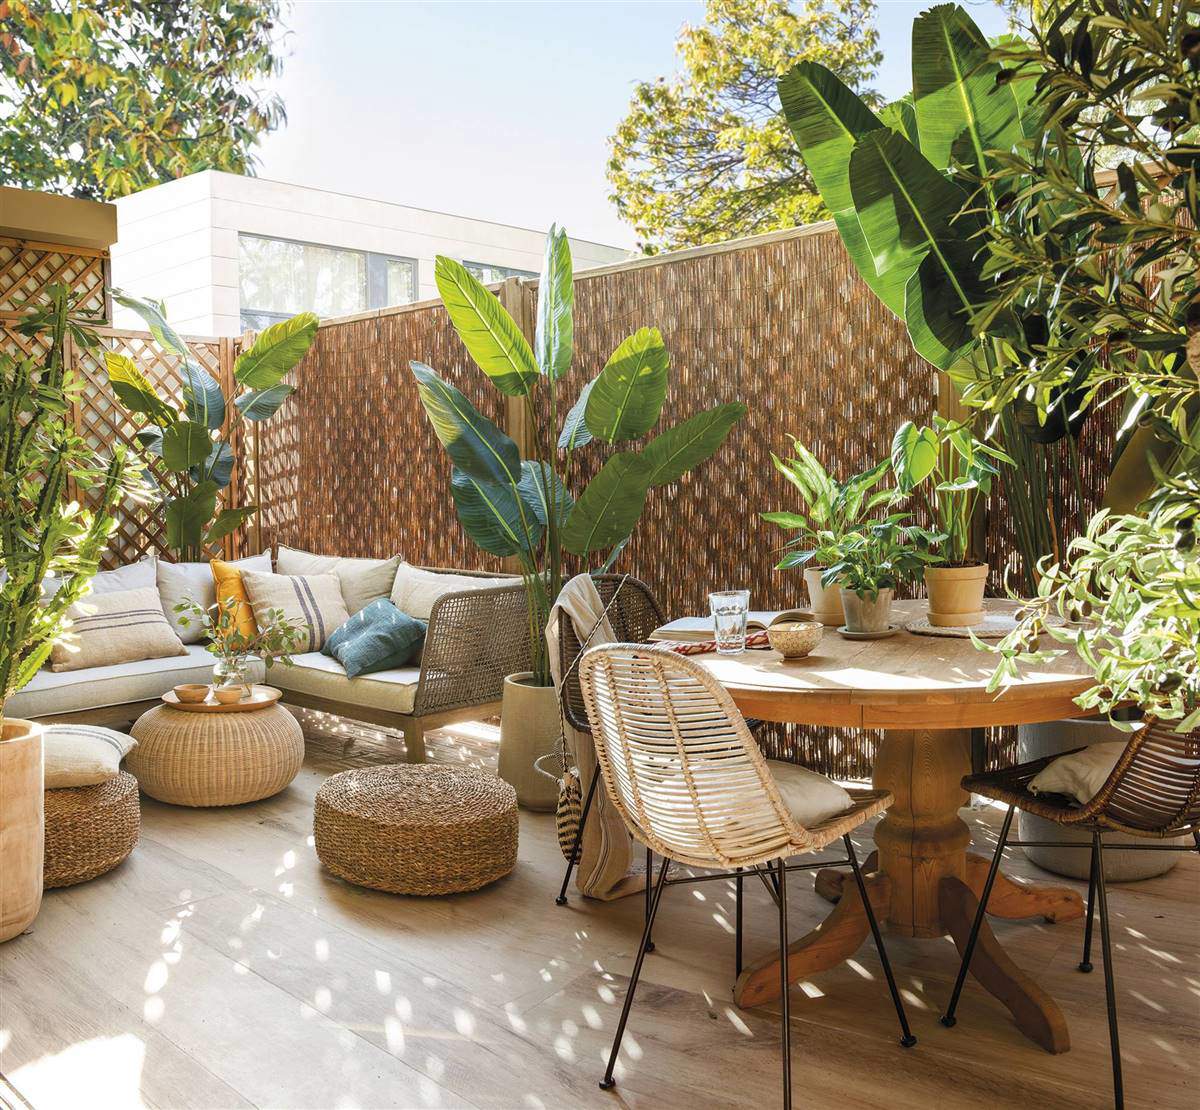 Terraza interior con plantas de exterior, sofá, comedor exterior y muebles de fibras. 